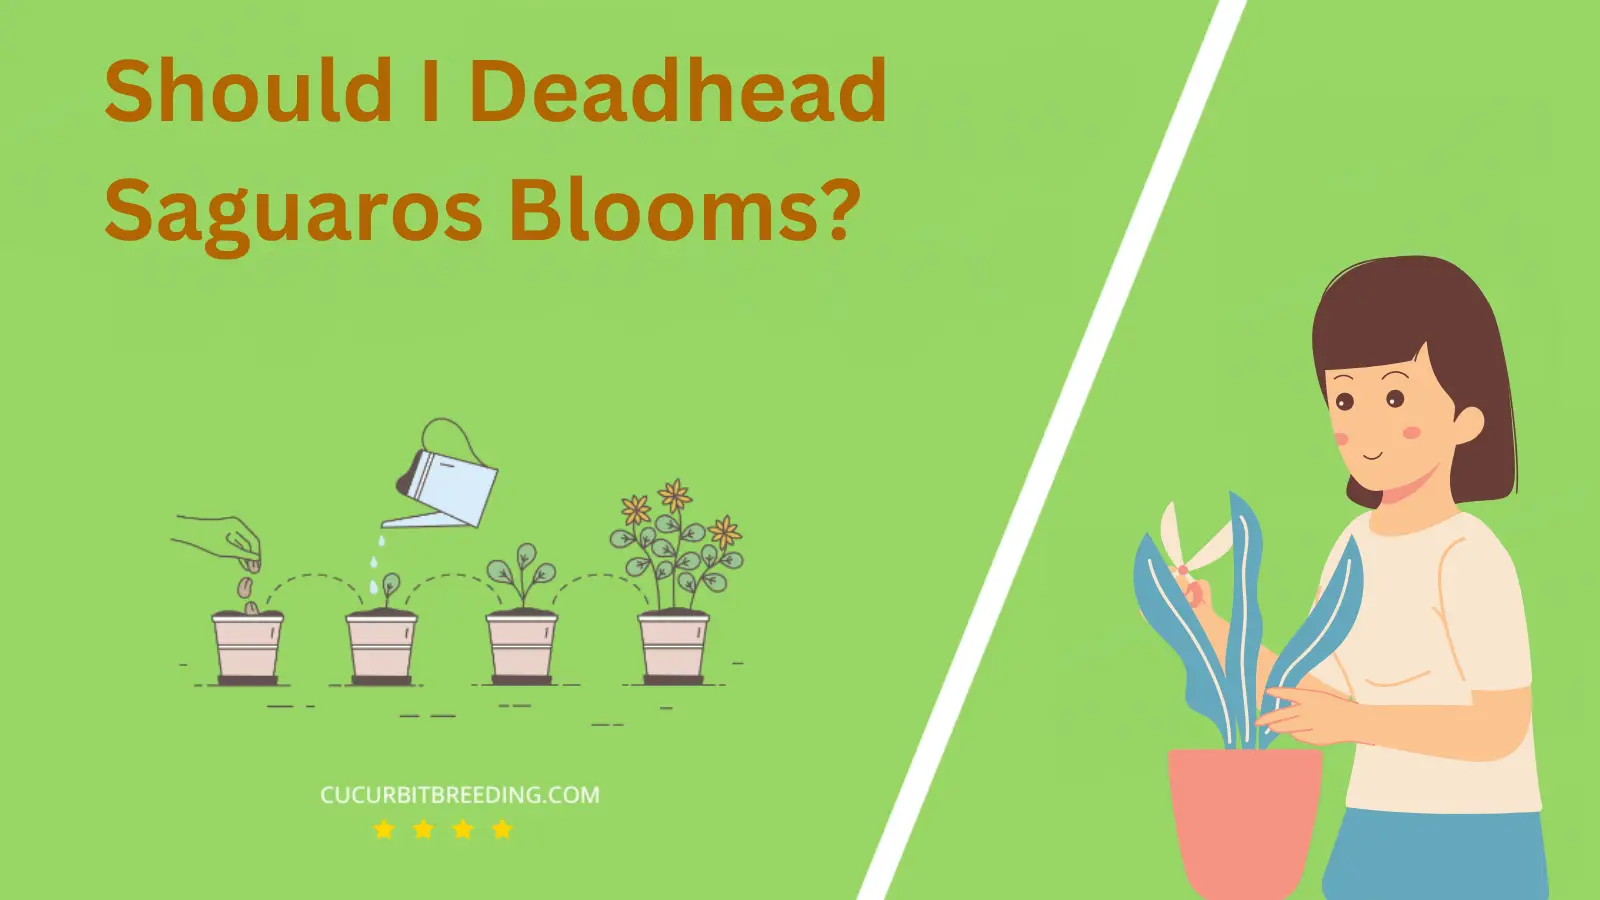 Should I Deadhead Saguaros Blooms?